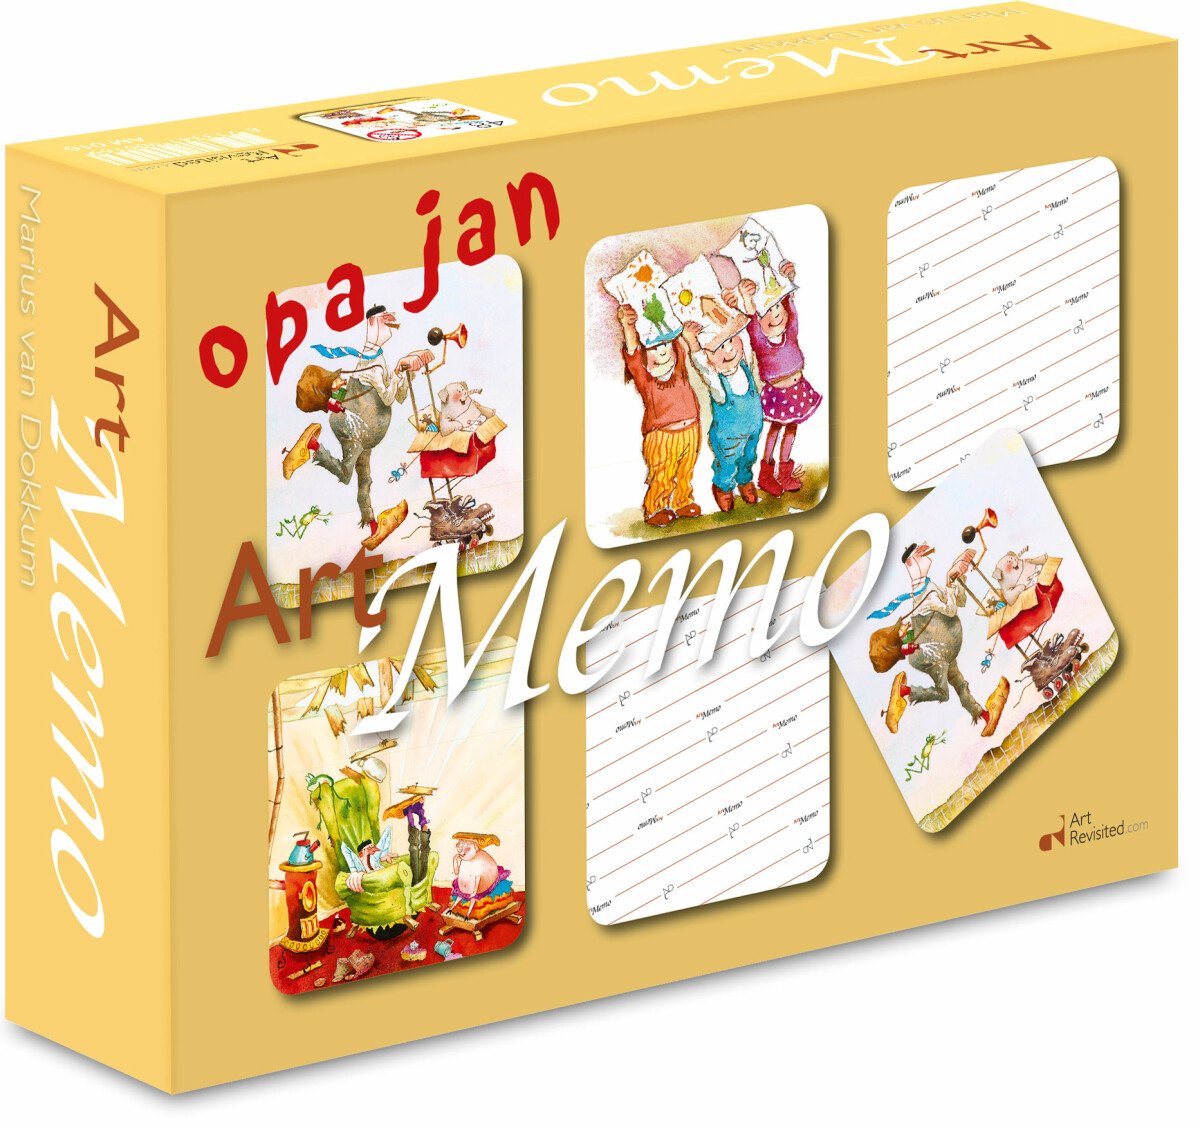 Opa Jan Art Memo spel 24 sets